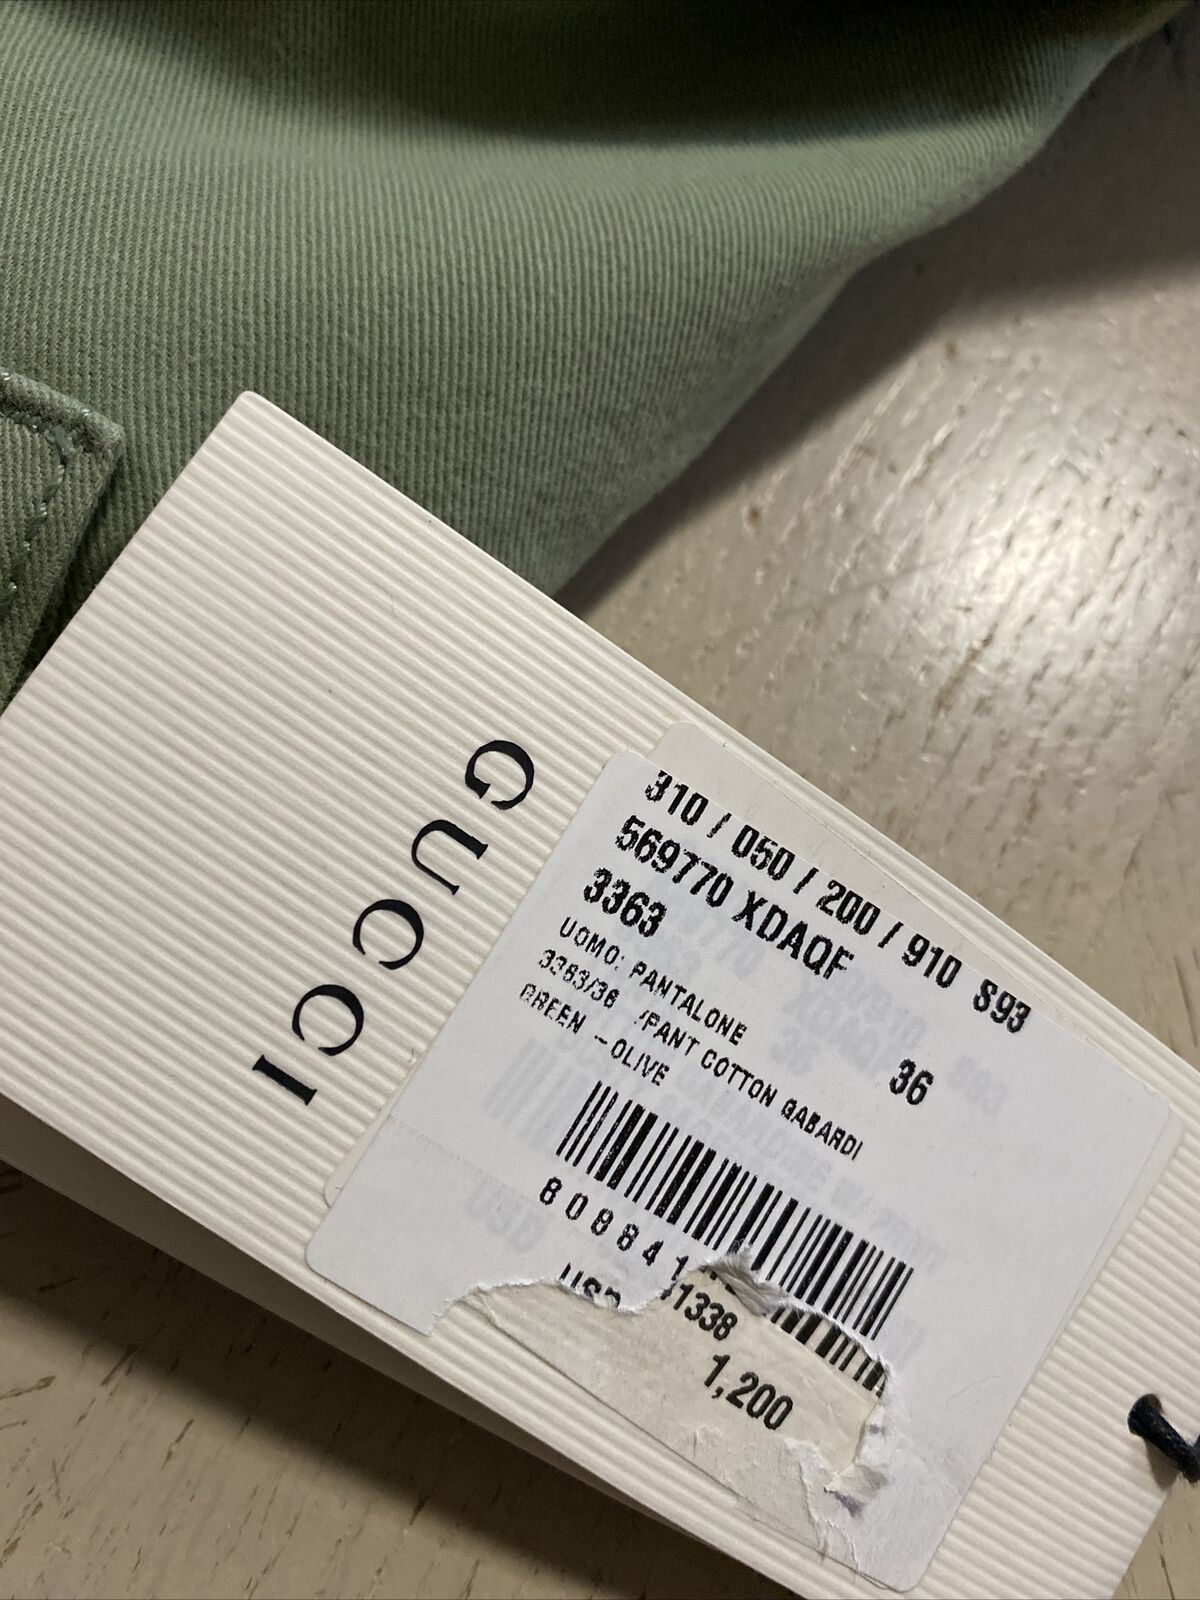 Новые мужские джеггинсы Gucci за 1200 долларов, зеленые 36 США (52 ЕС), сделано в Италии